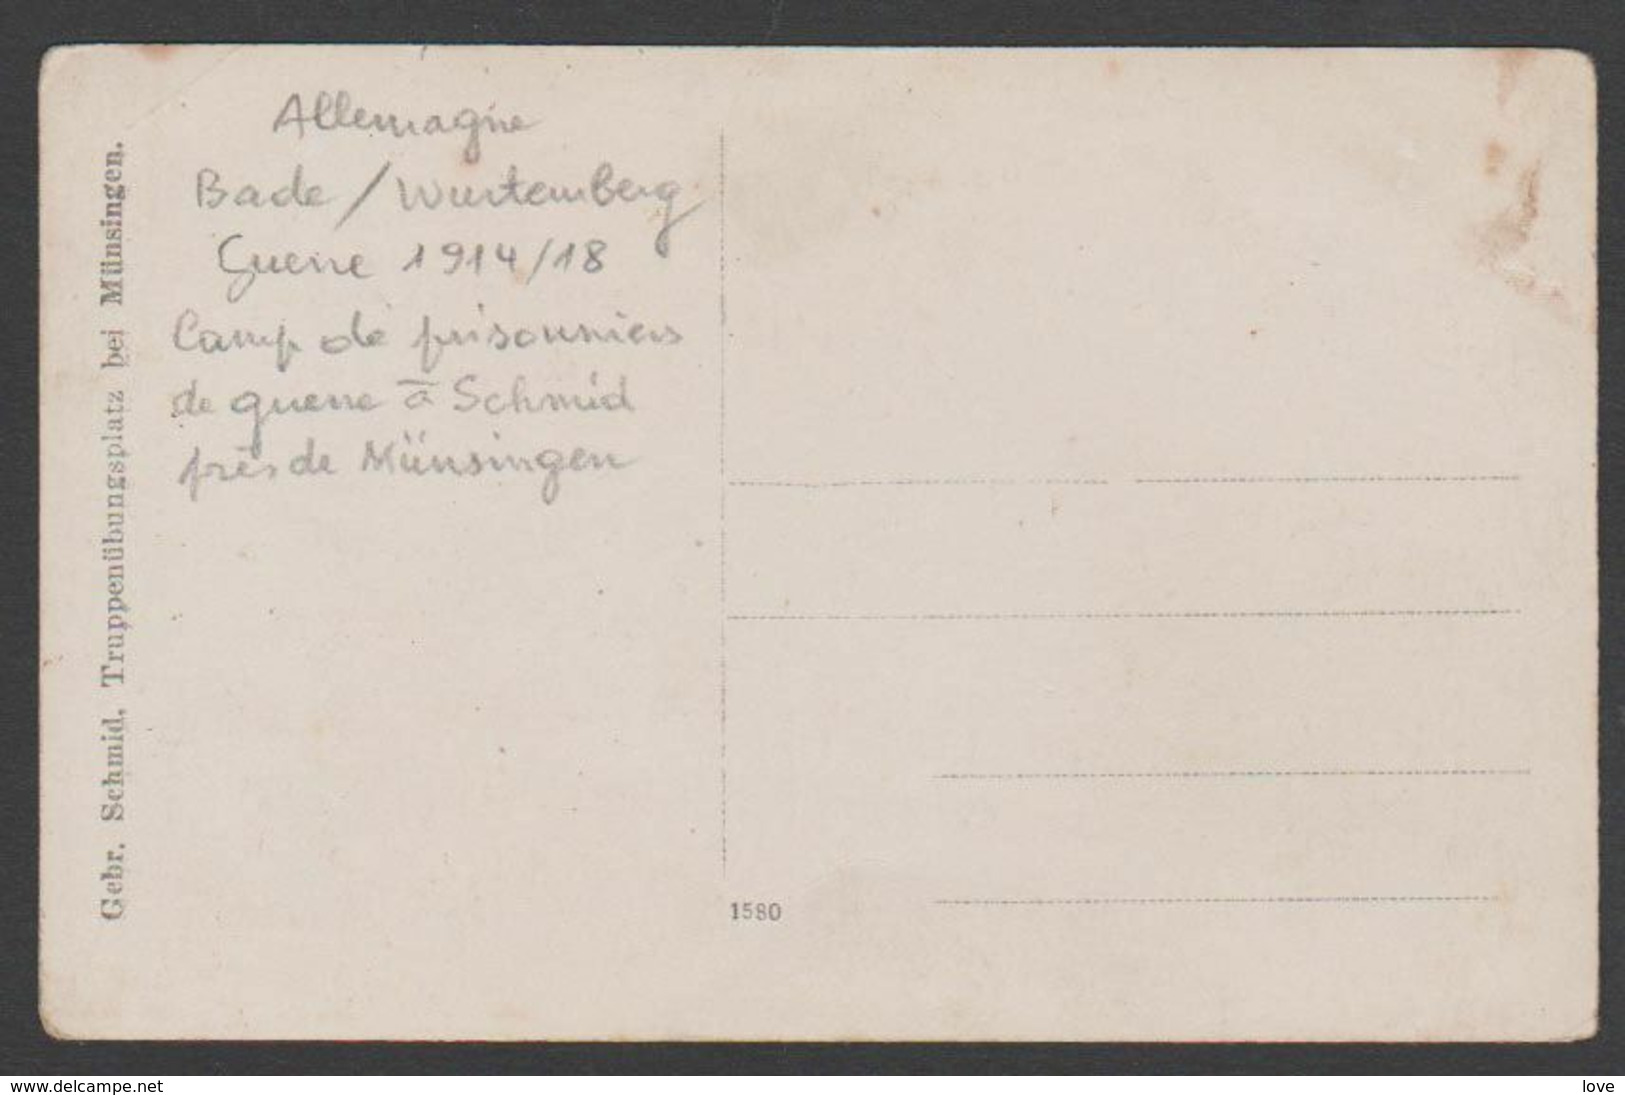 FRANCE/ ALLEMAGNE (Guerre 1914/18) Bon Plan Sur Des Prisonniers Se Guerre à Schmid Près De Münsingen........ - Münsingen